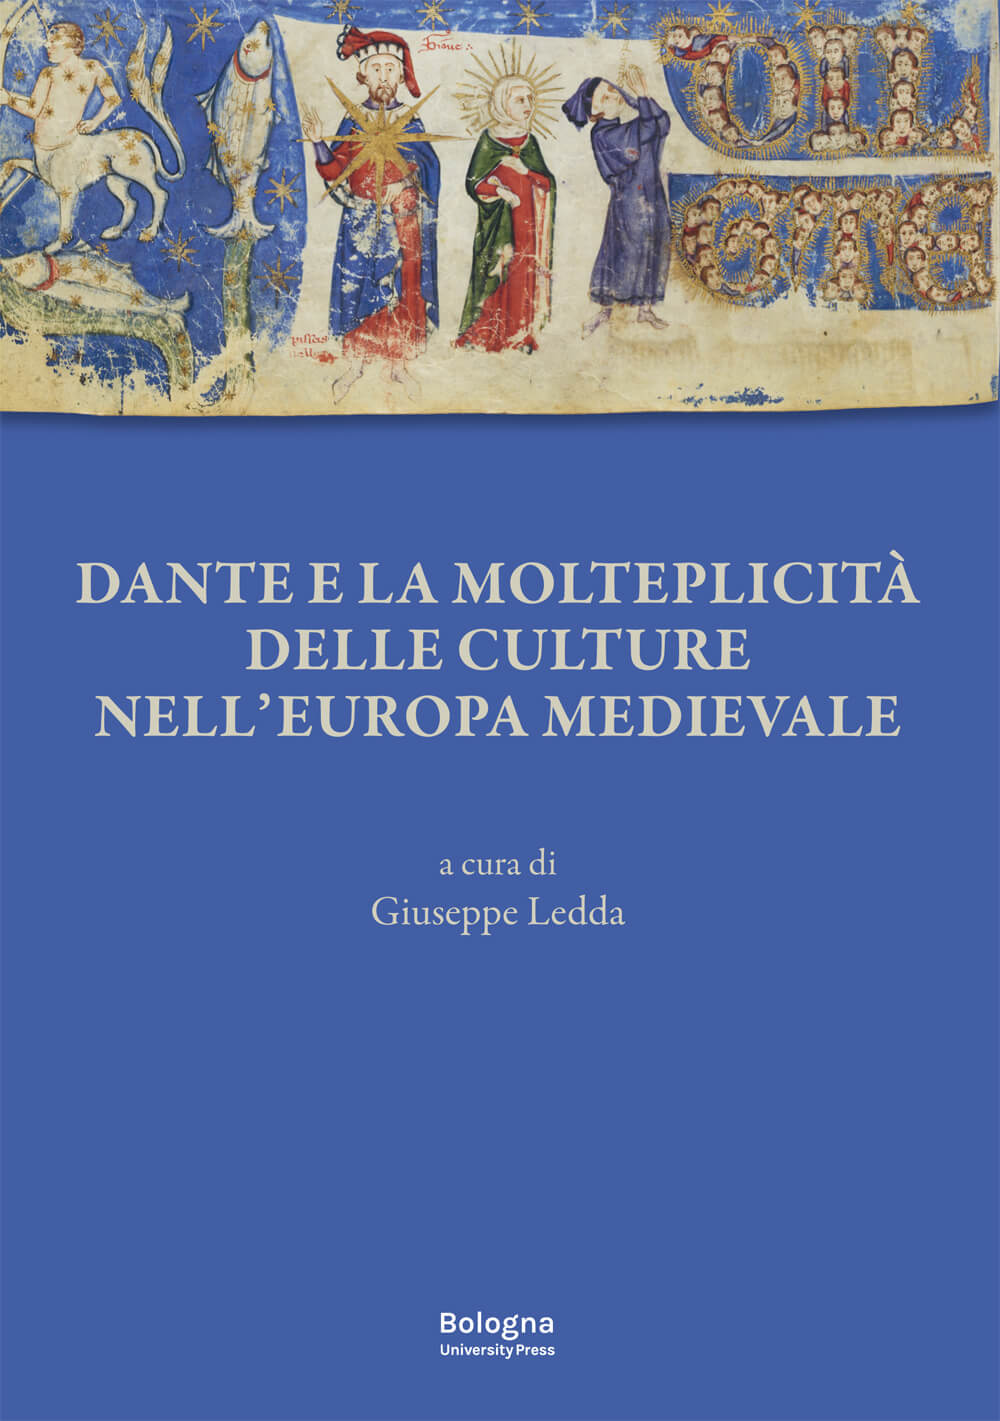 Imagen de portada del libro Dante e la molteplicità delle culture nell'Europa medievale